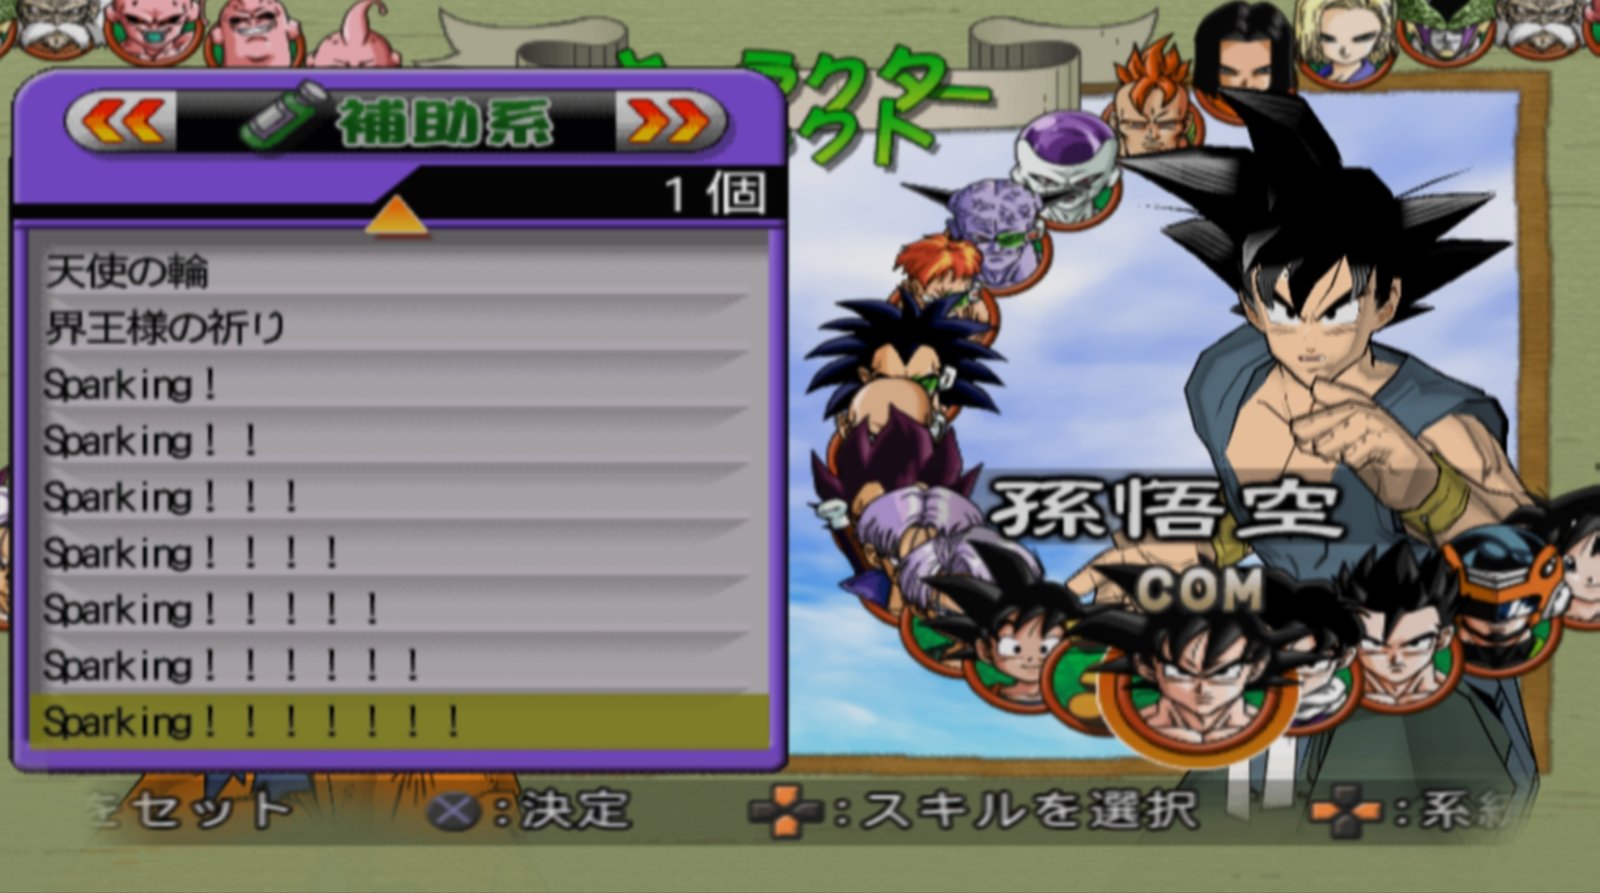 Majin Boo aparece com visual inédito em Dragon Ball Super - 03